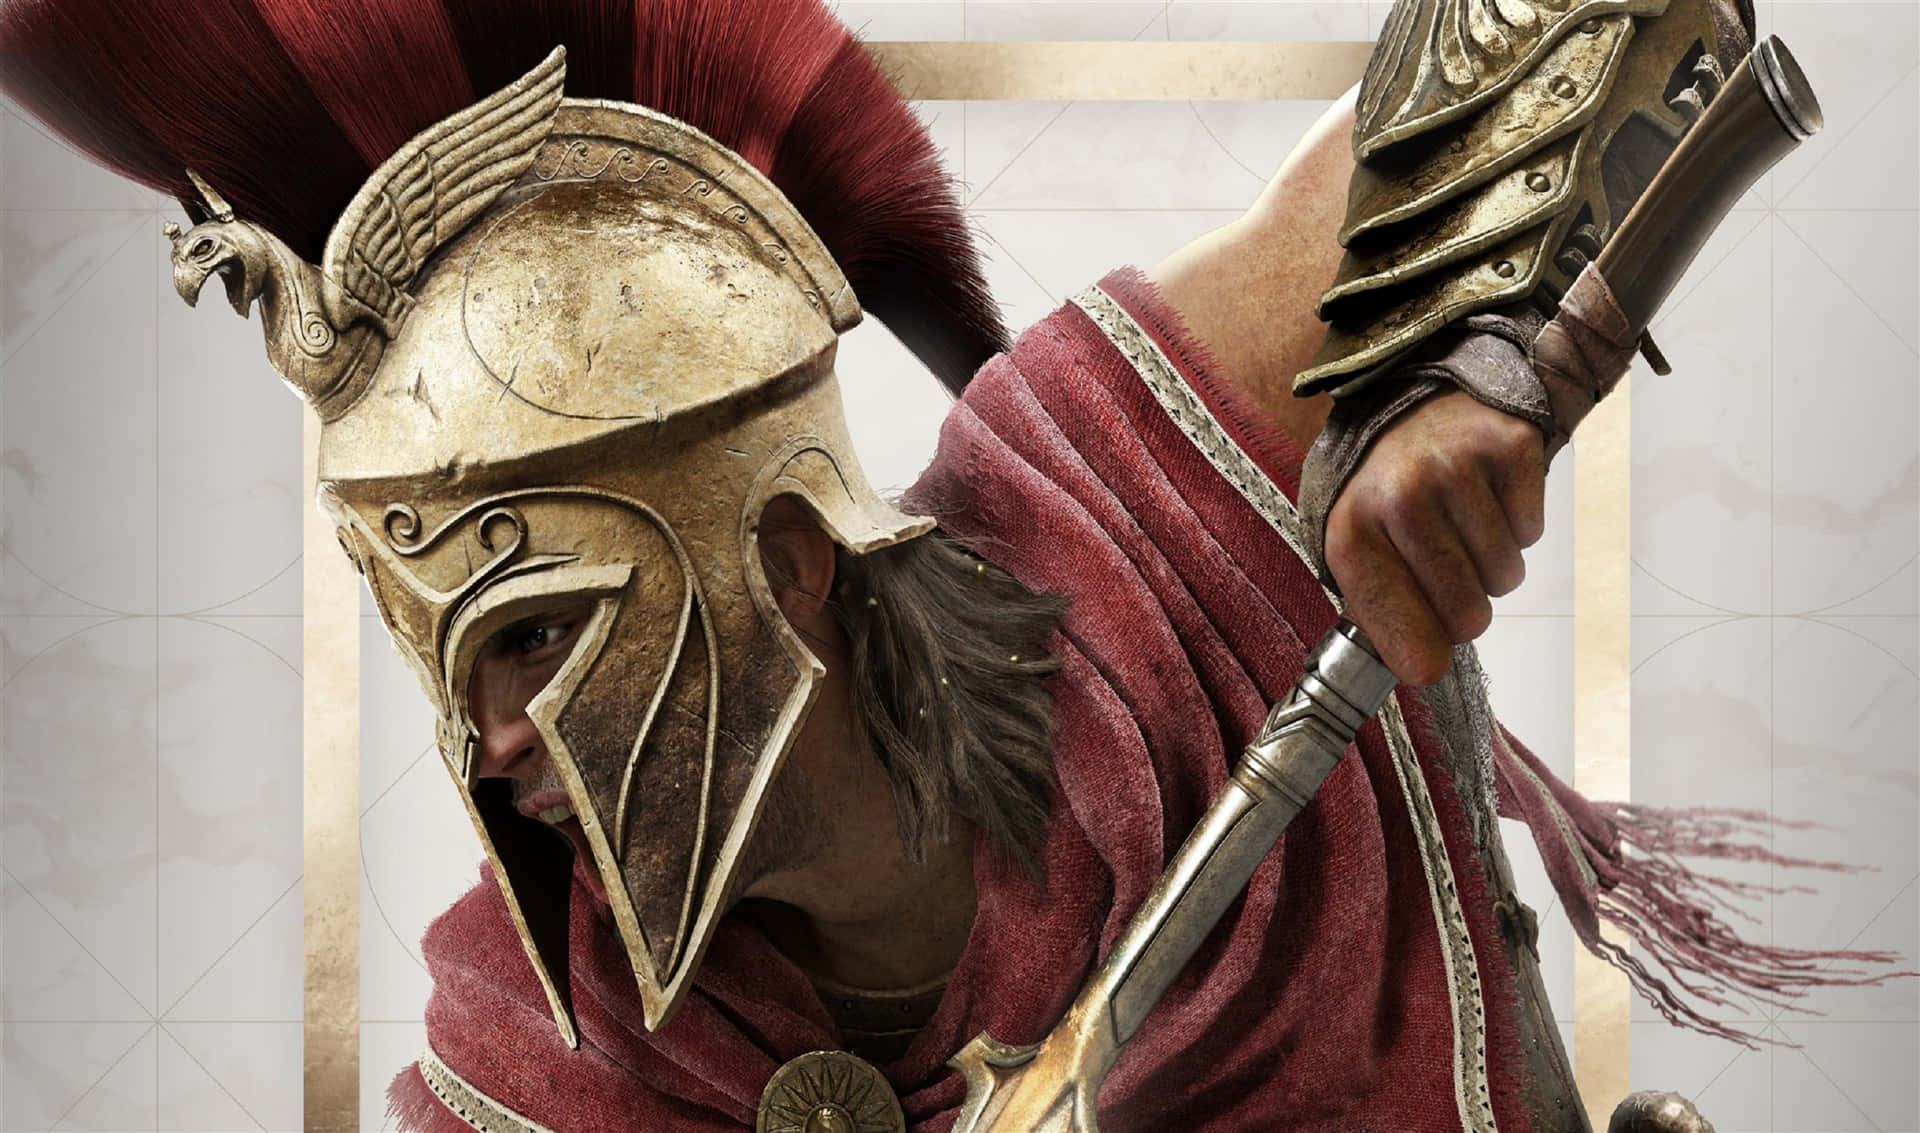 2440x1440bakgrundsbild Av Alexios Från Assassin's Creed Odyssey.